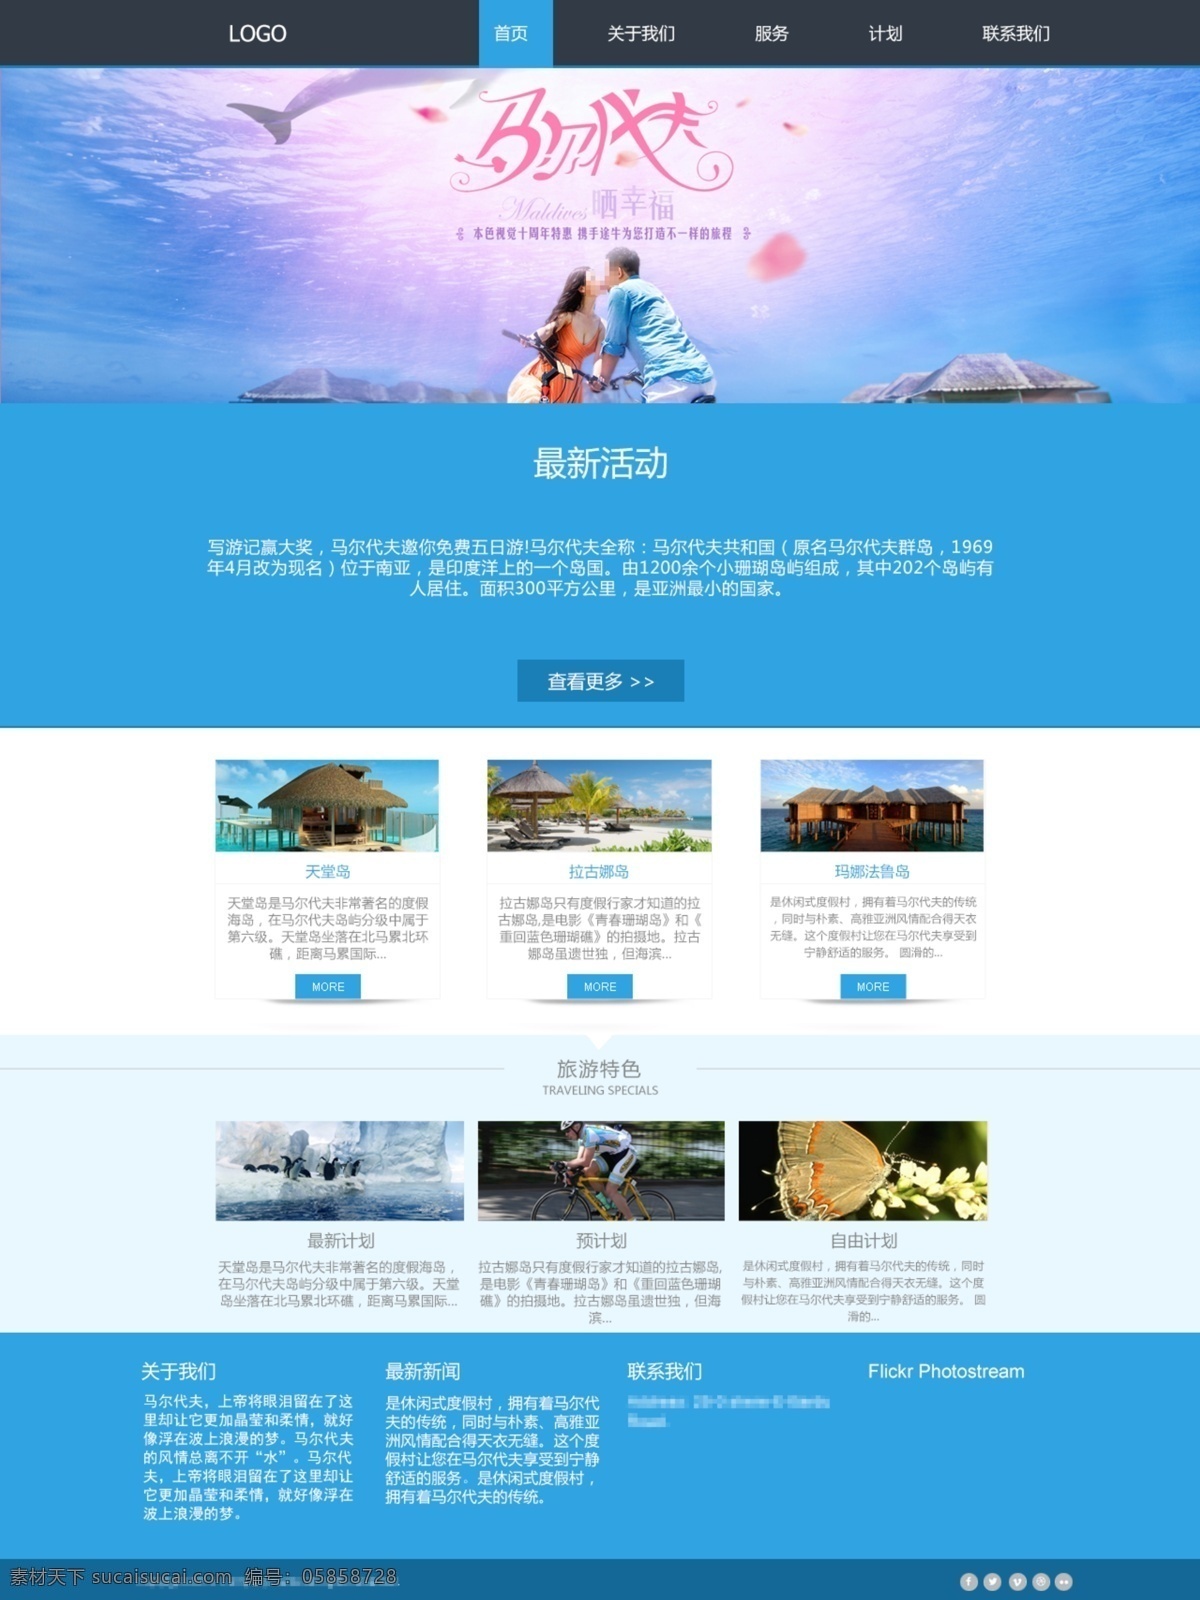 旅游 网站设计 模板 网站 设计模板 马尔代夫 首页 白色